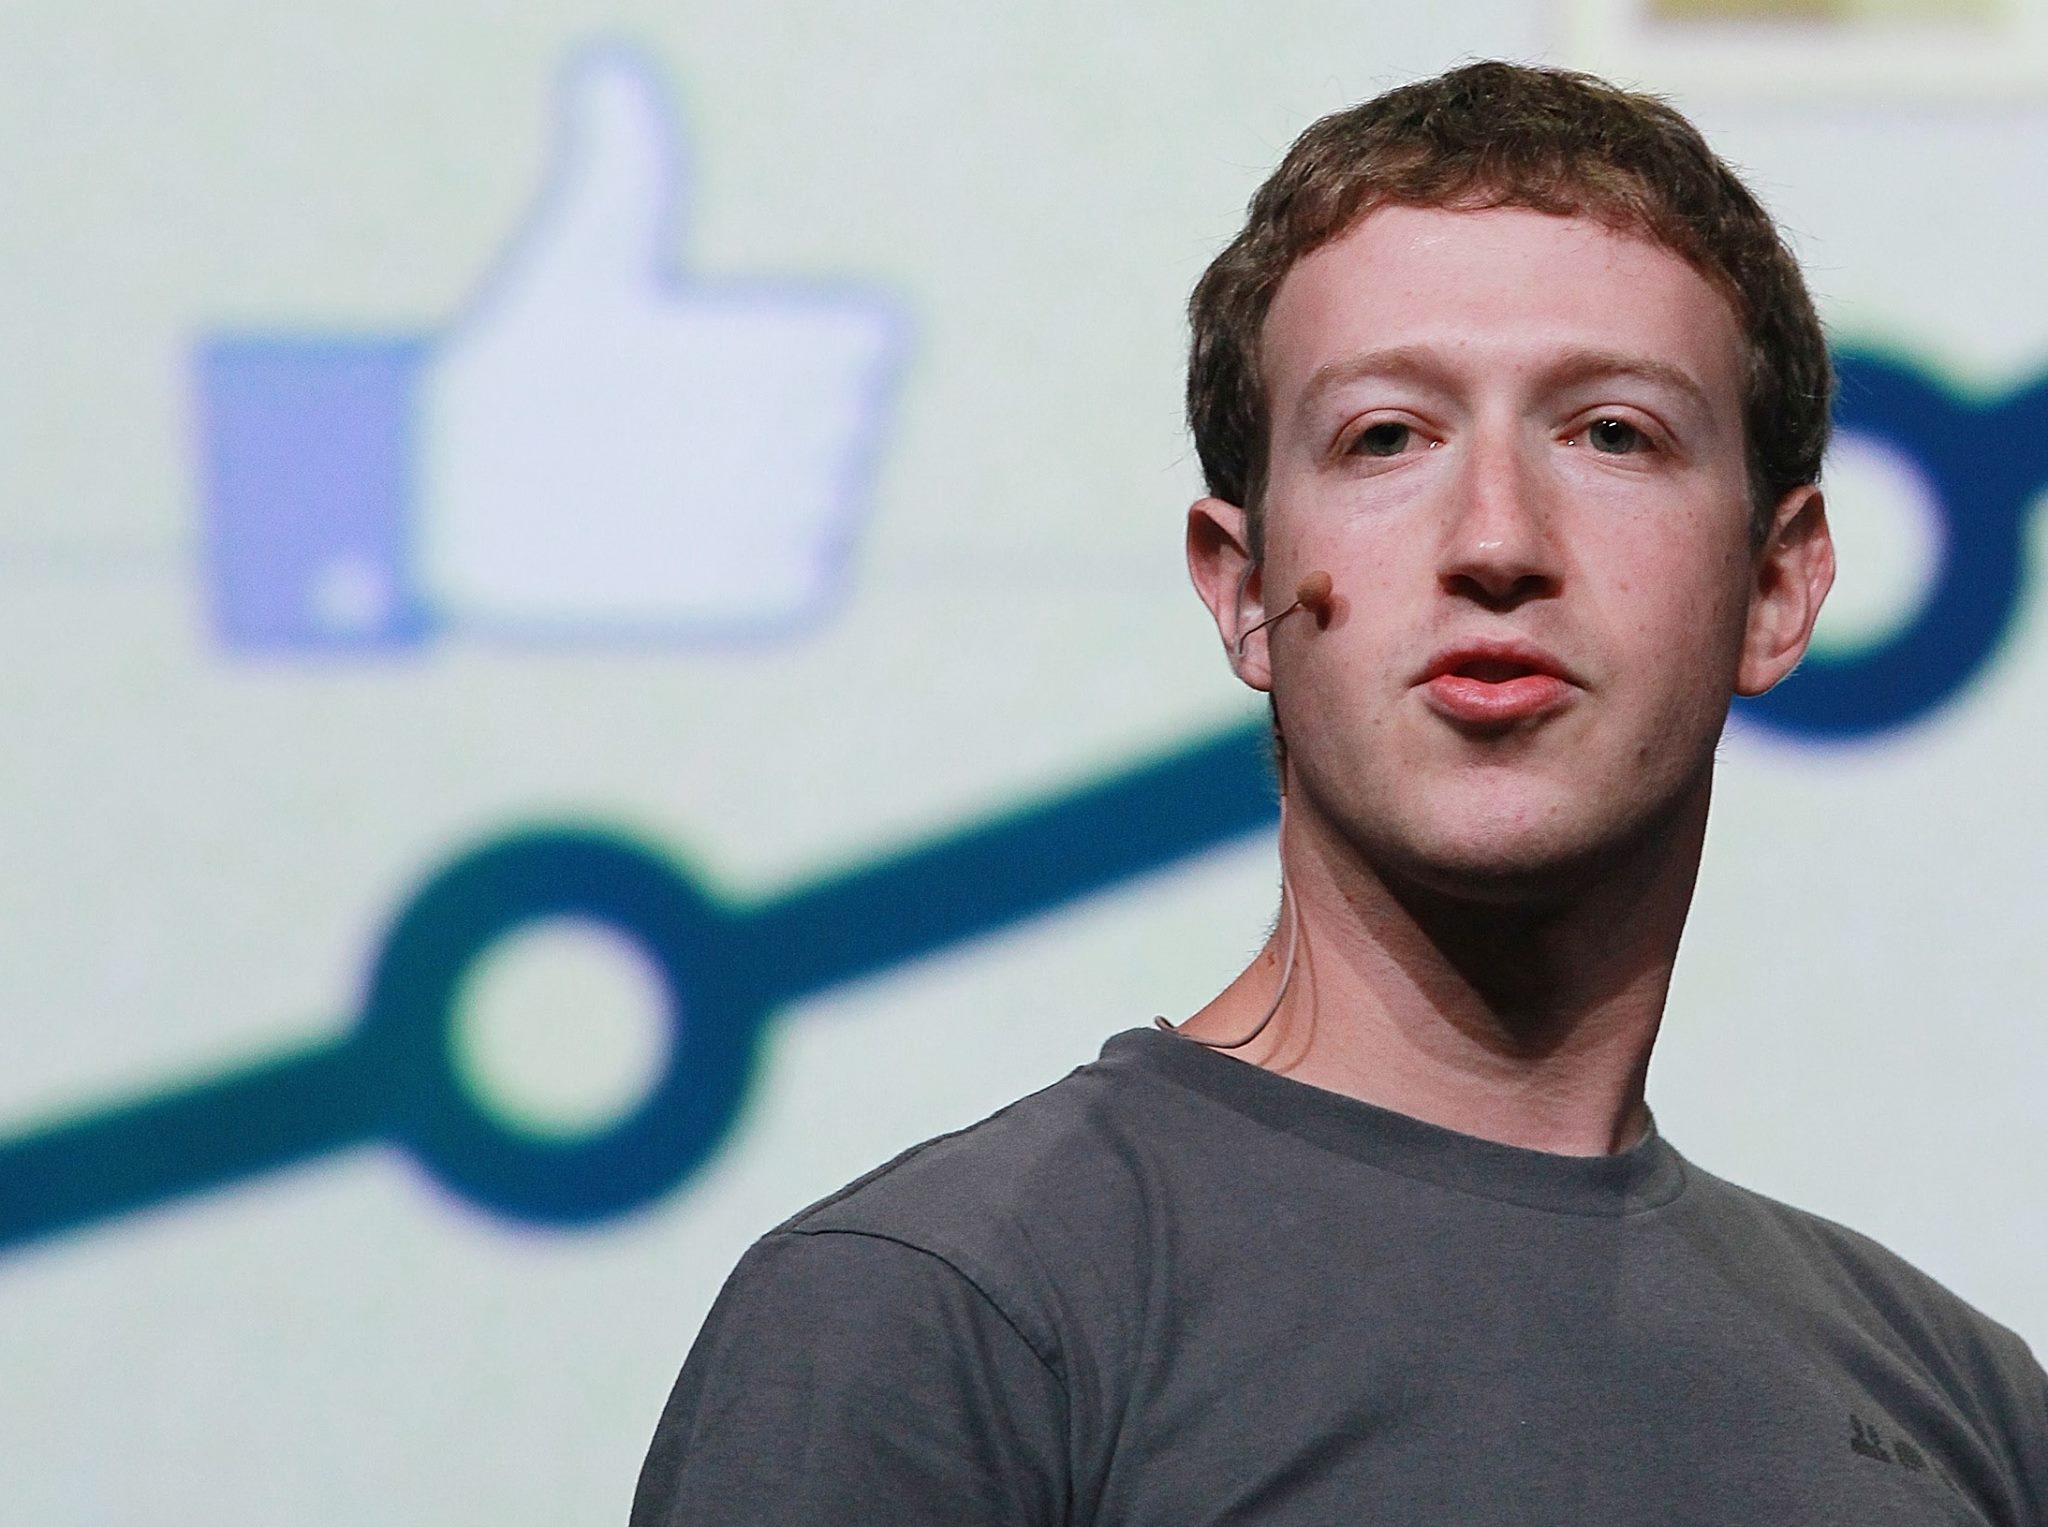 Ce s-a întâmplat în cele 7 ore în care Facebook, Instagram, WhatsApp și Messenger au căzut. Explicațiile lui Zuckerberg